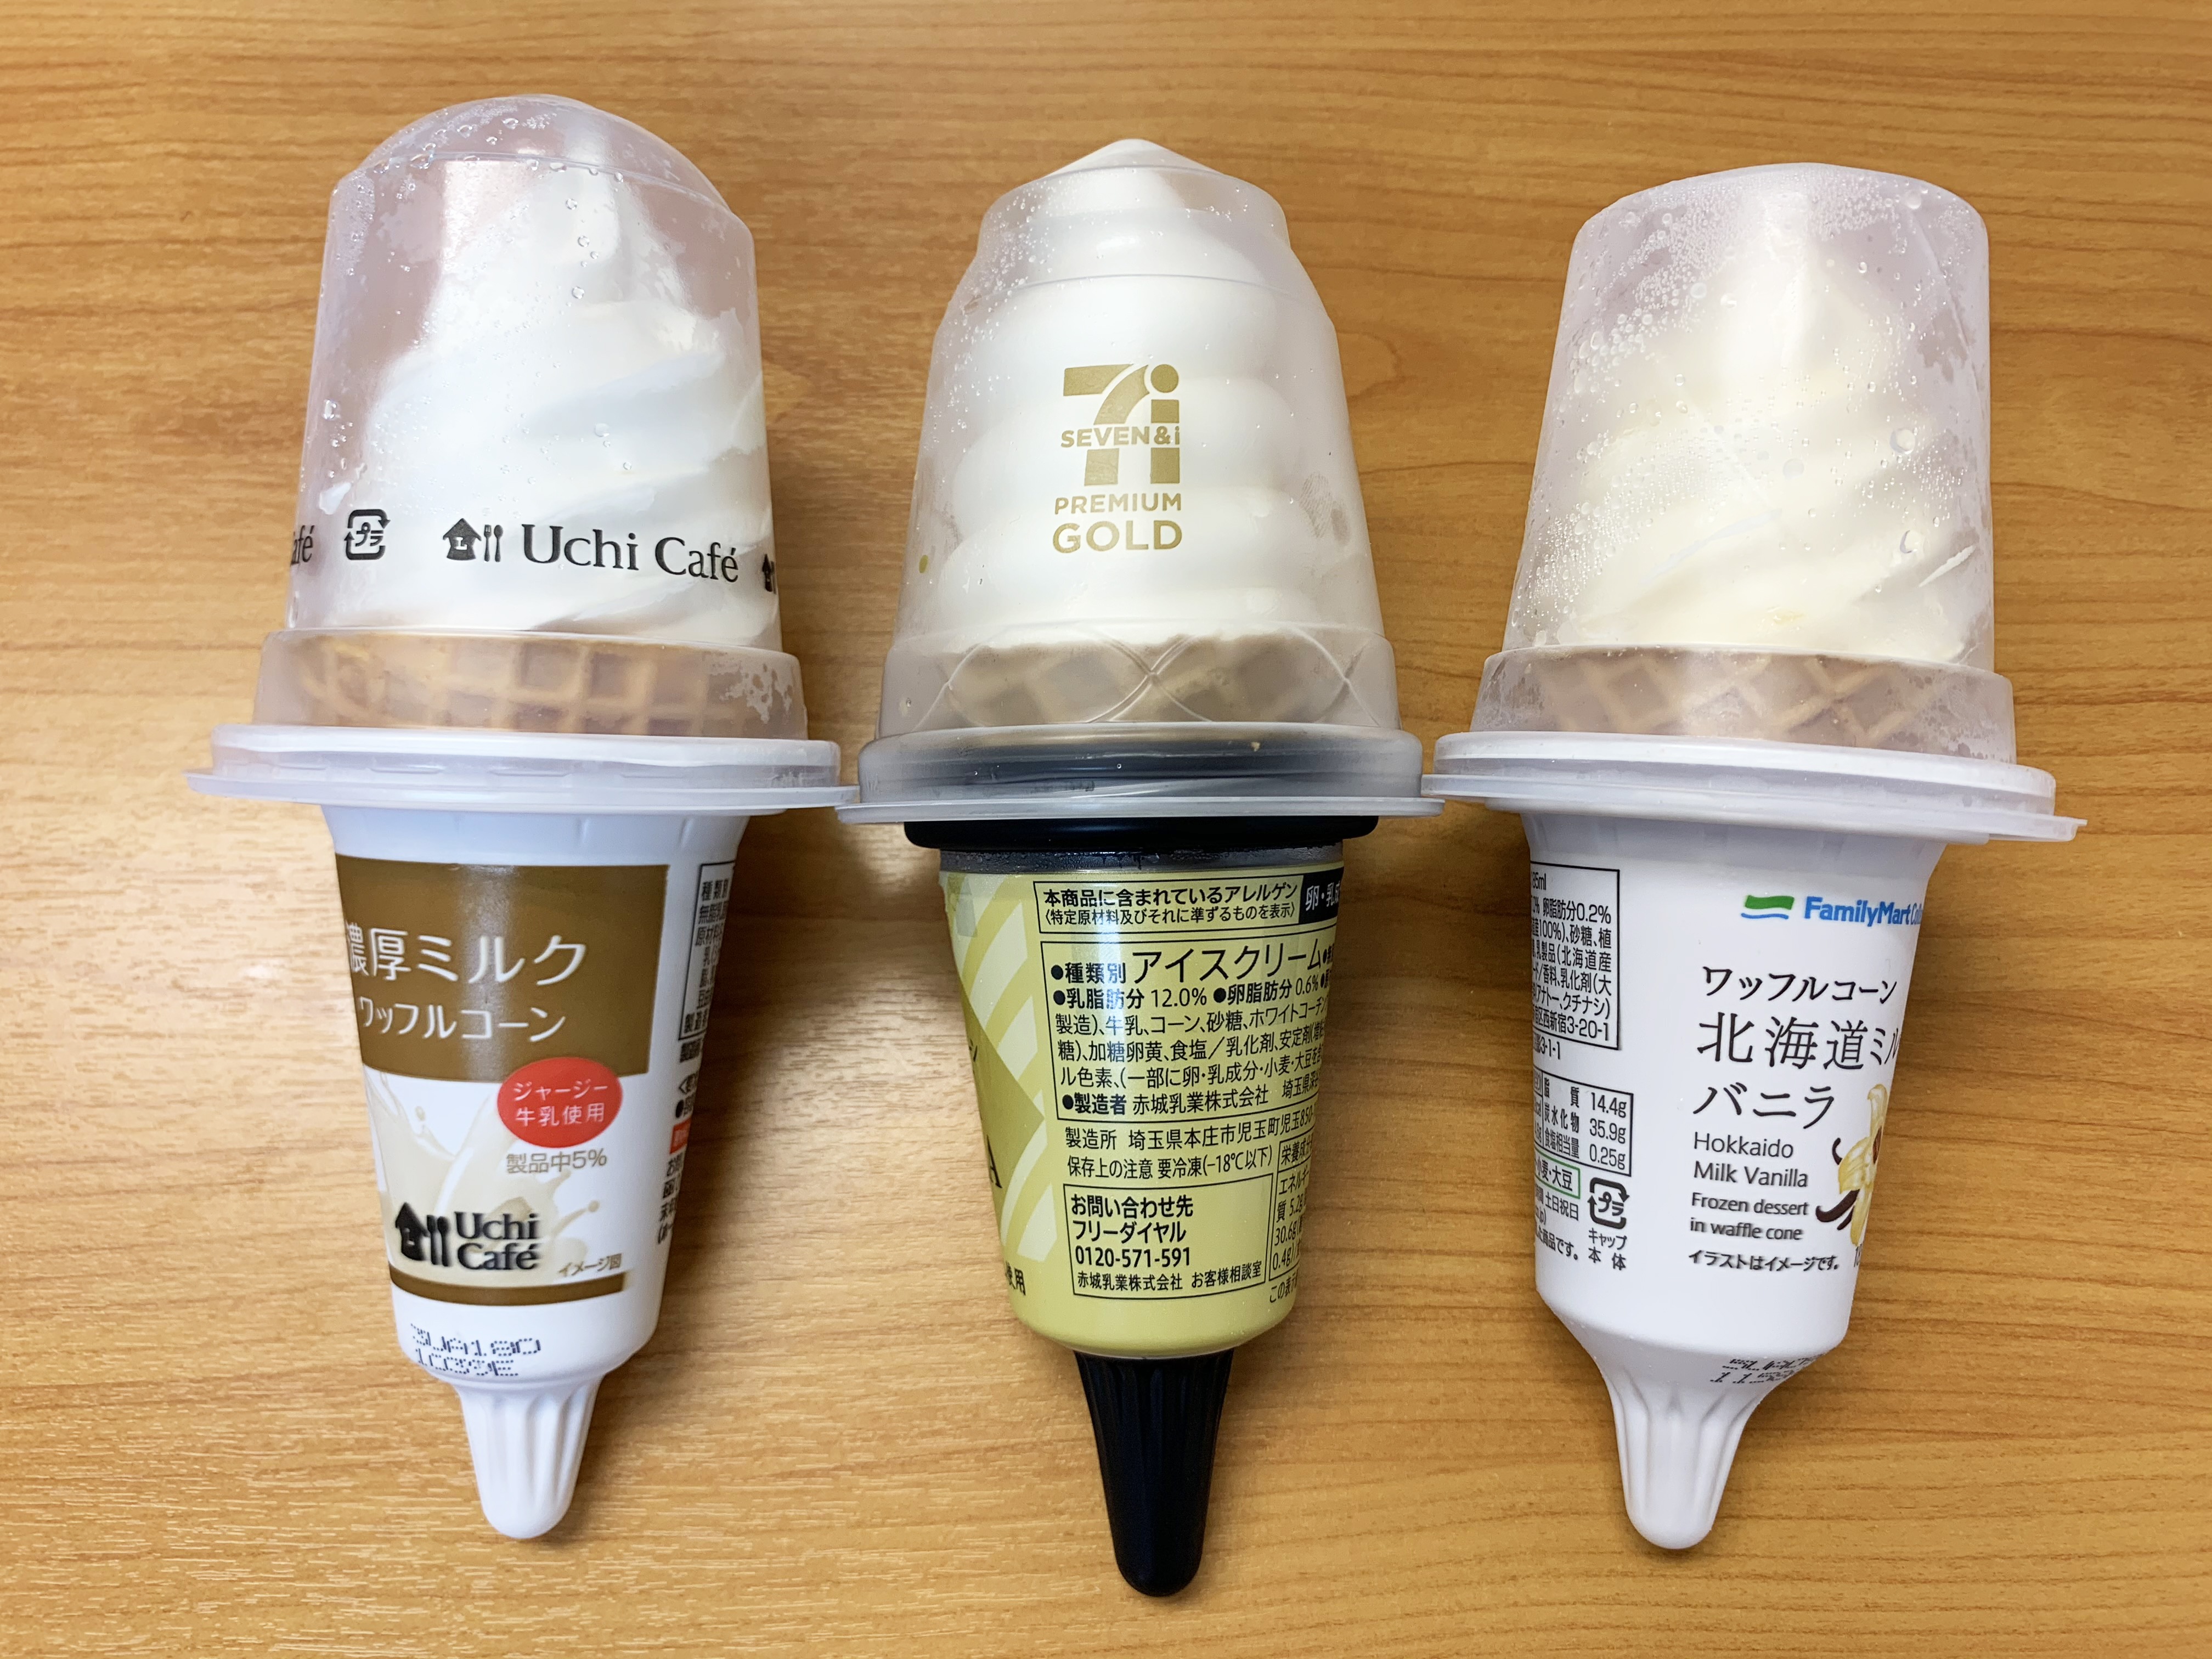 ソフトクリームの日 コンビニ大手3社のソフトクリームを食べ比べてみた結果 質の高いセブン以上にファミマに 天晴 と思う理由 ロケットニュース24